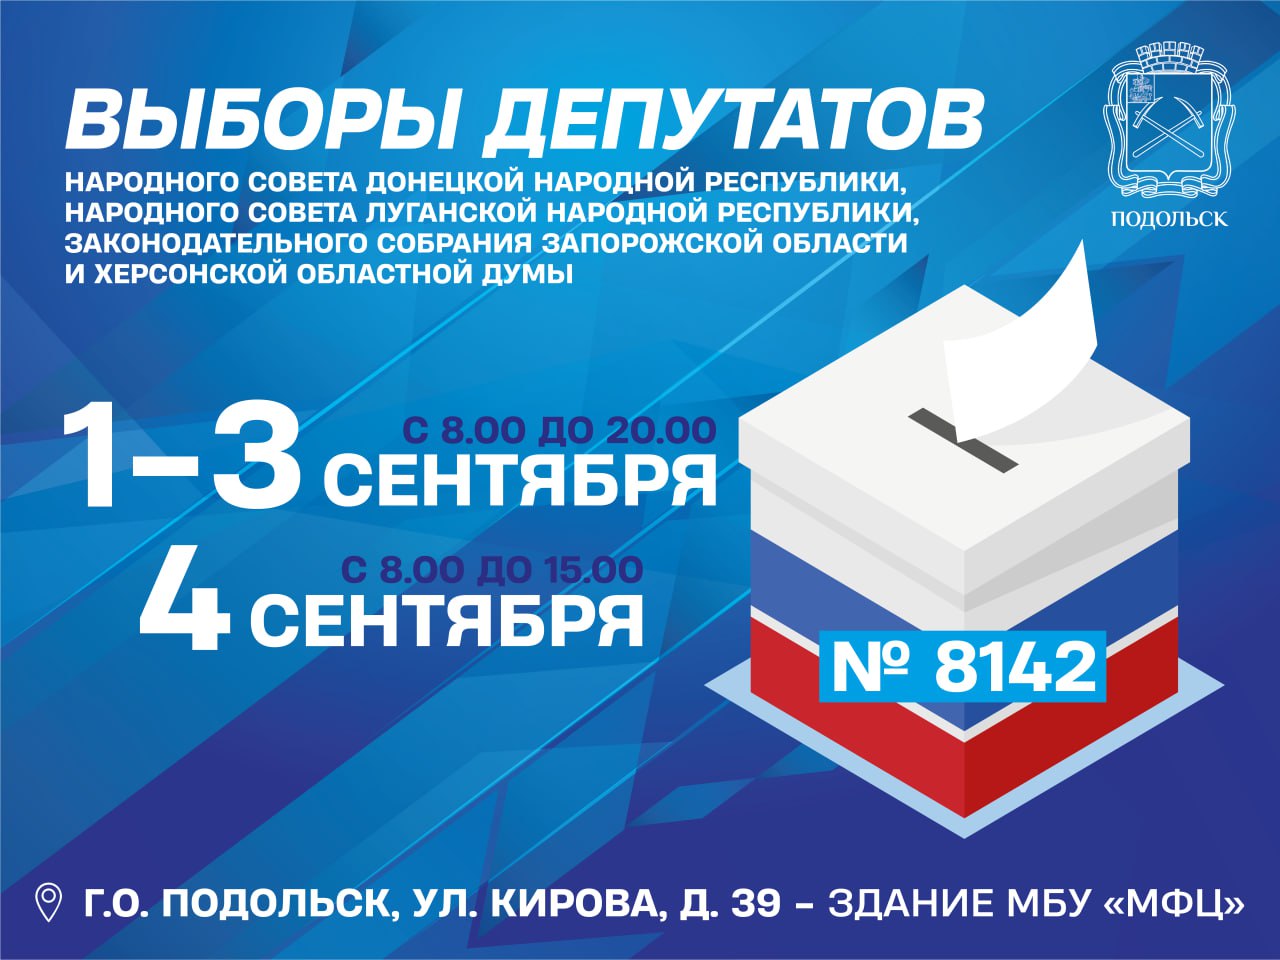 Жители ЛНР, ДНР, Запорожской и Херсонской областей смогут проголосовать в Подольске